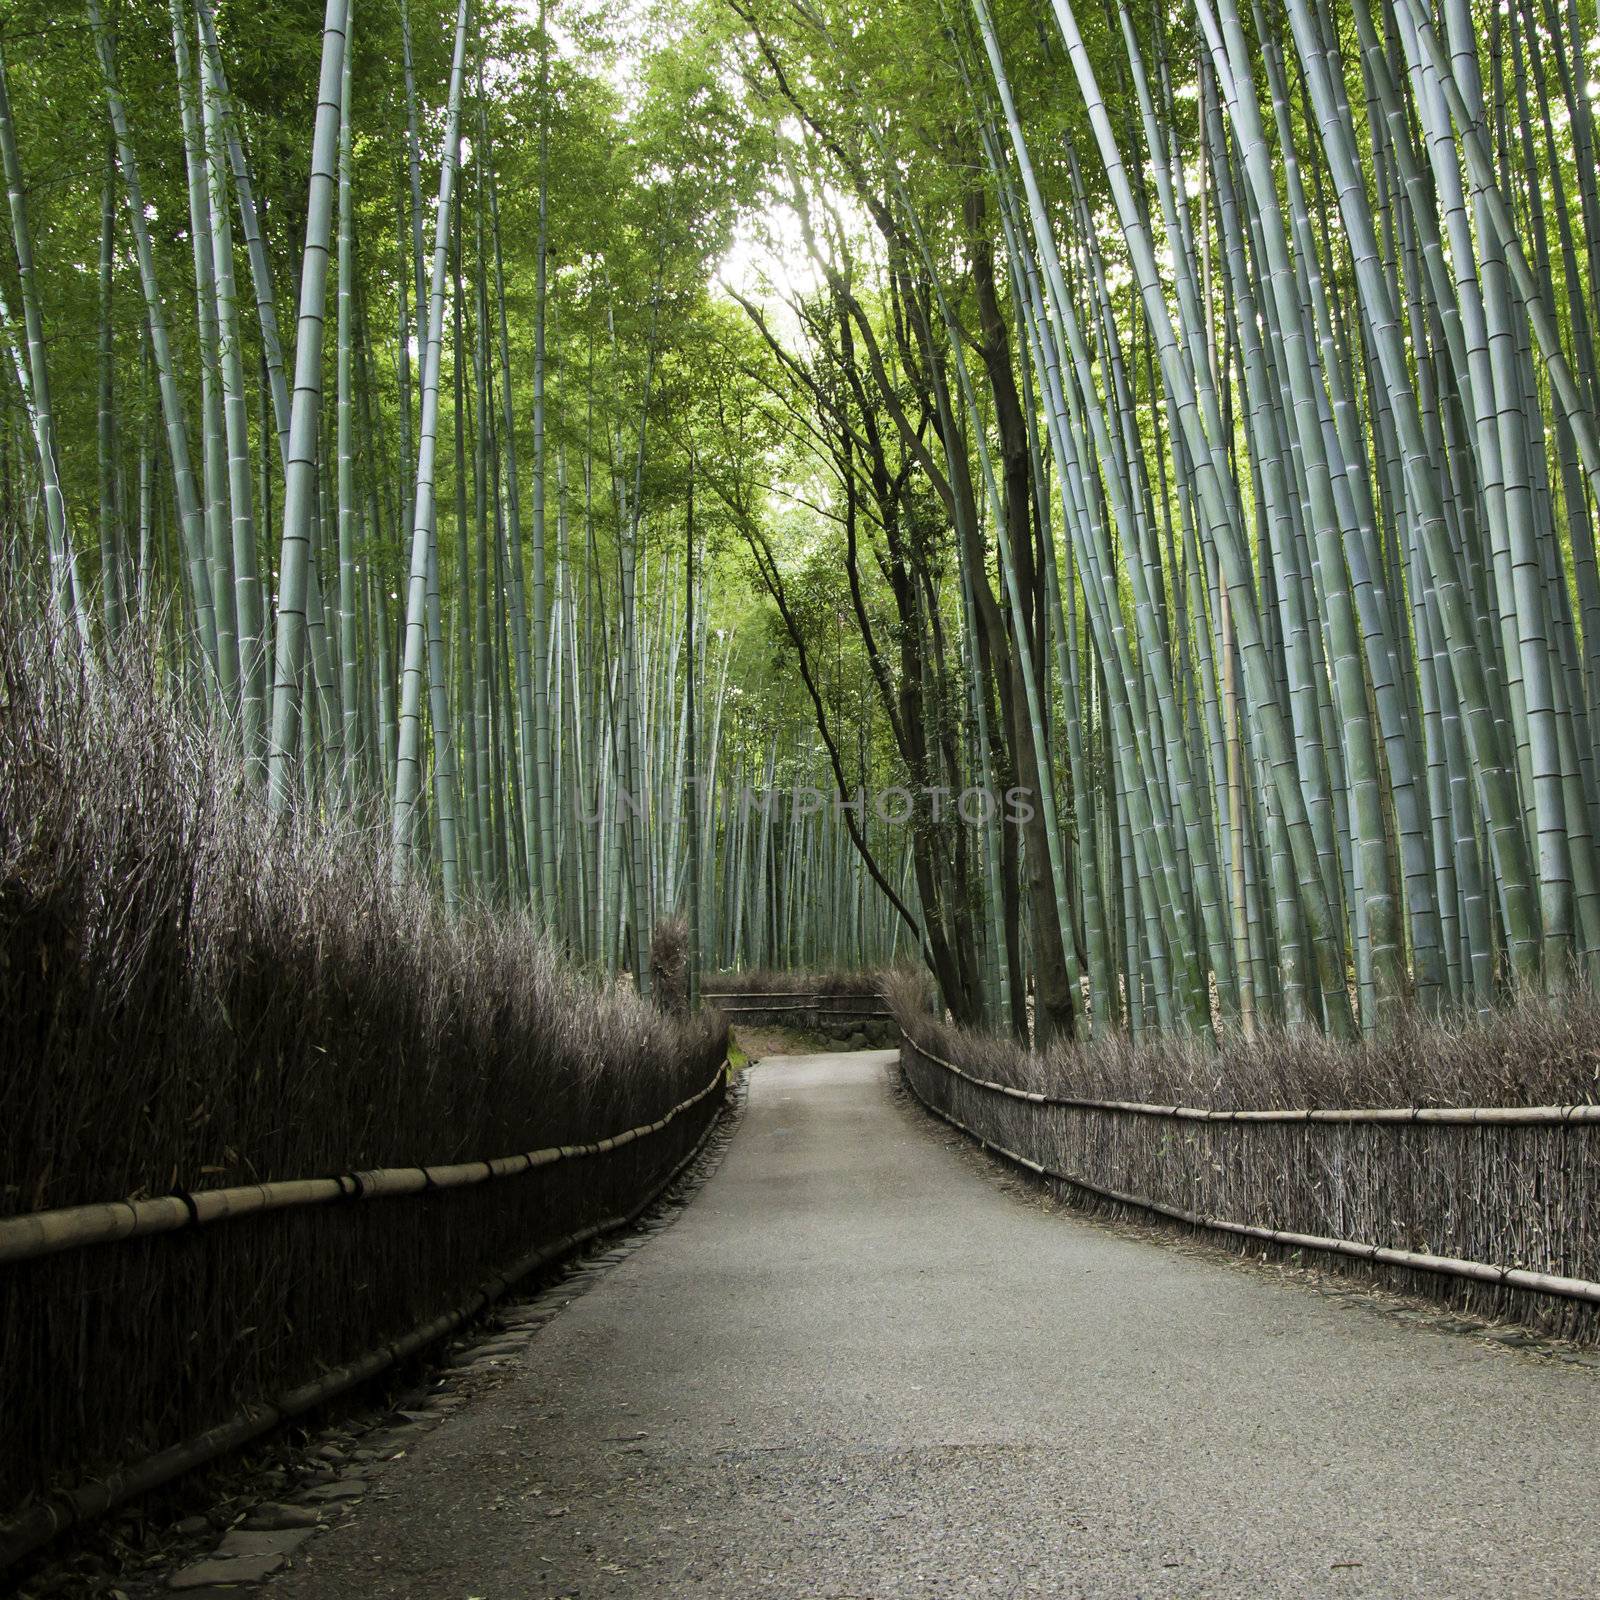 Bamboo grove in Arashiyama in Kyoto, Japan by siraanamwong